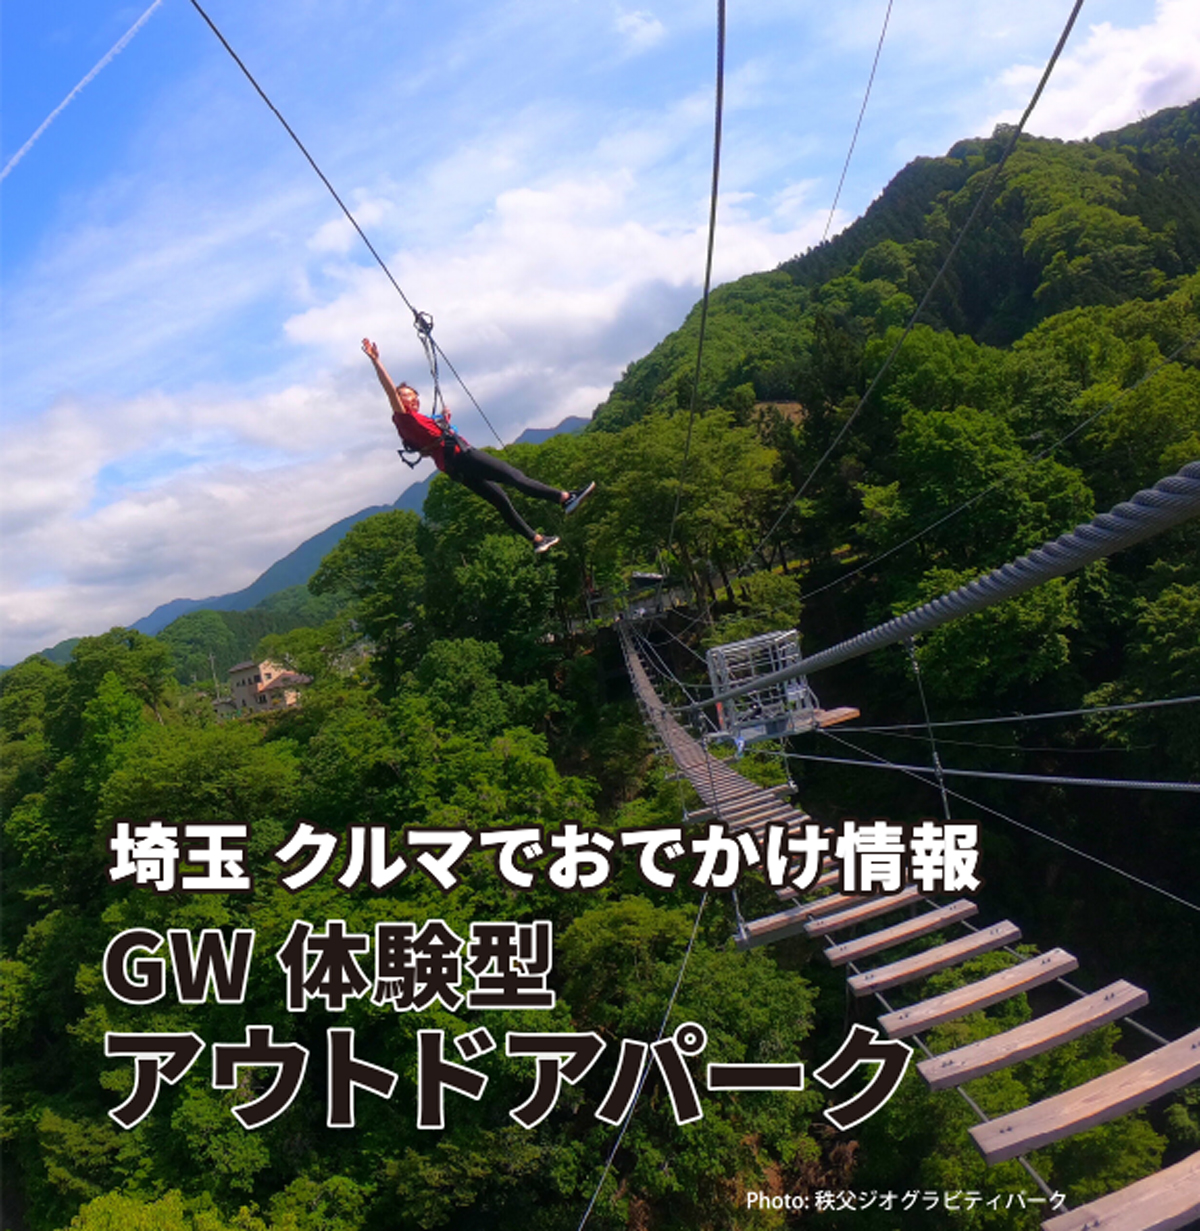 埼玉 クルマでおでかけ情報 GW体験型 アウトドアパーク